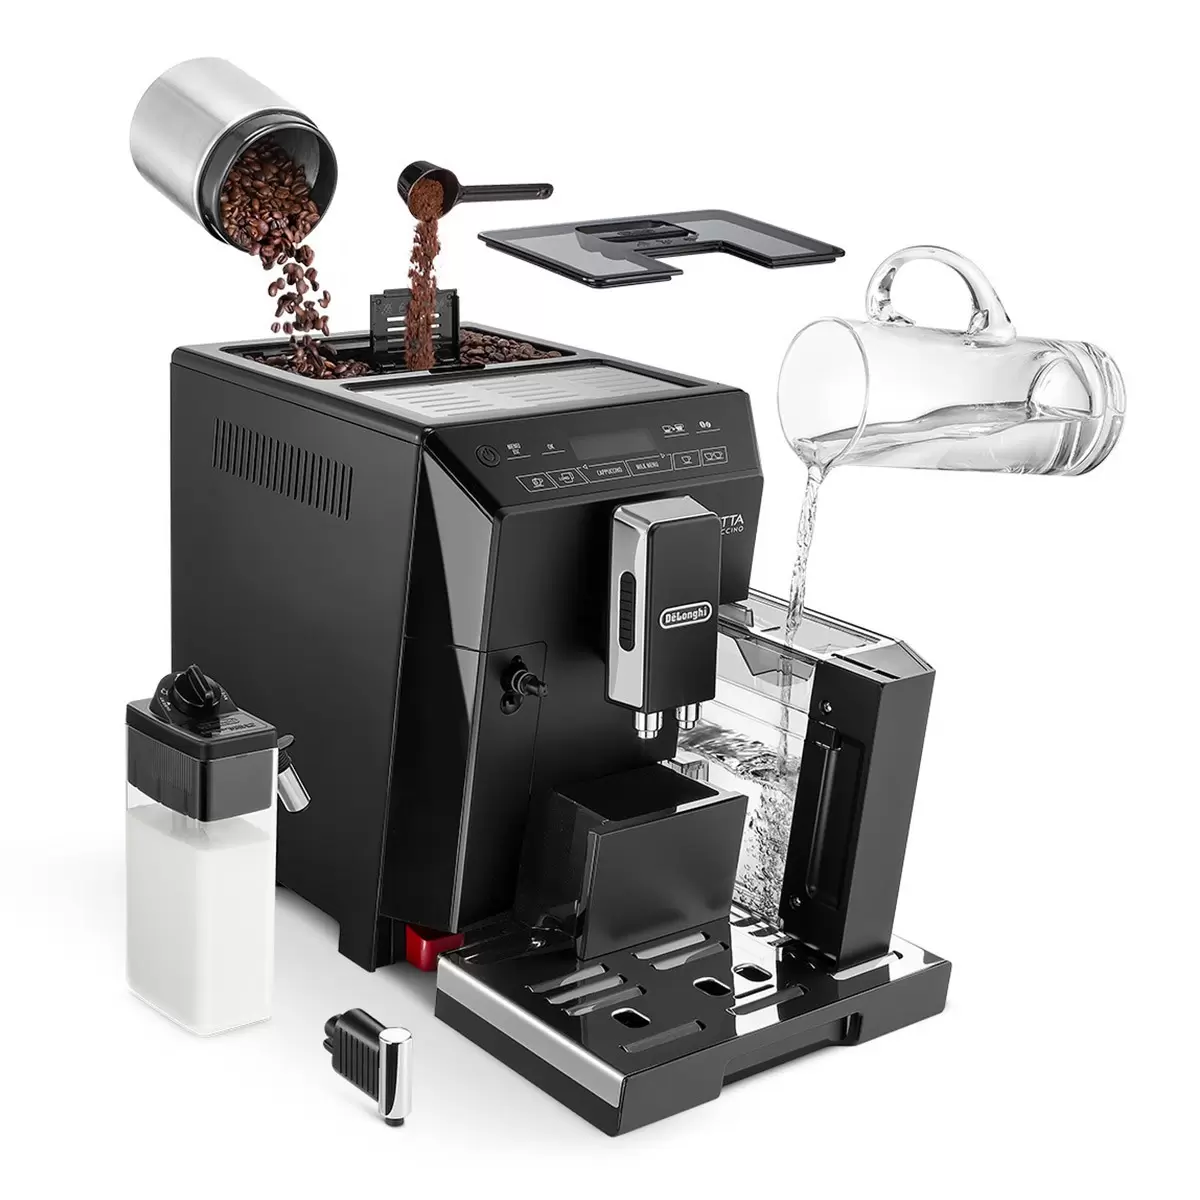 迪朗奇 全自動義式咖啡機 ECAM44.660B